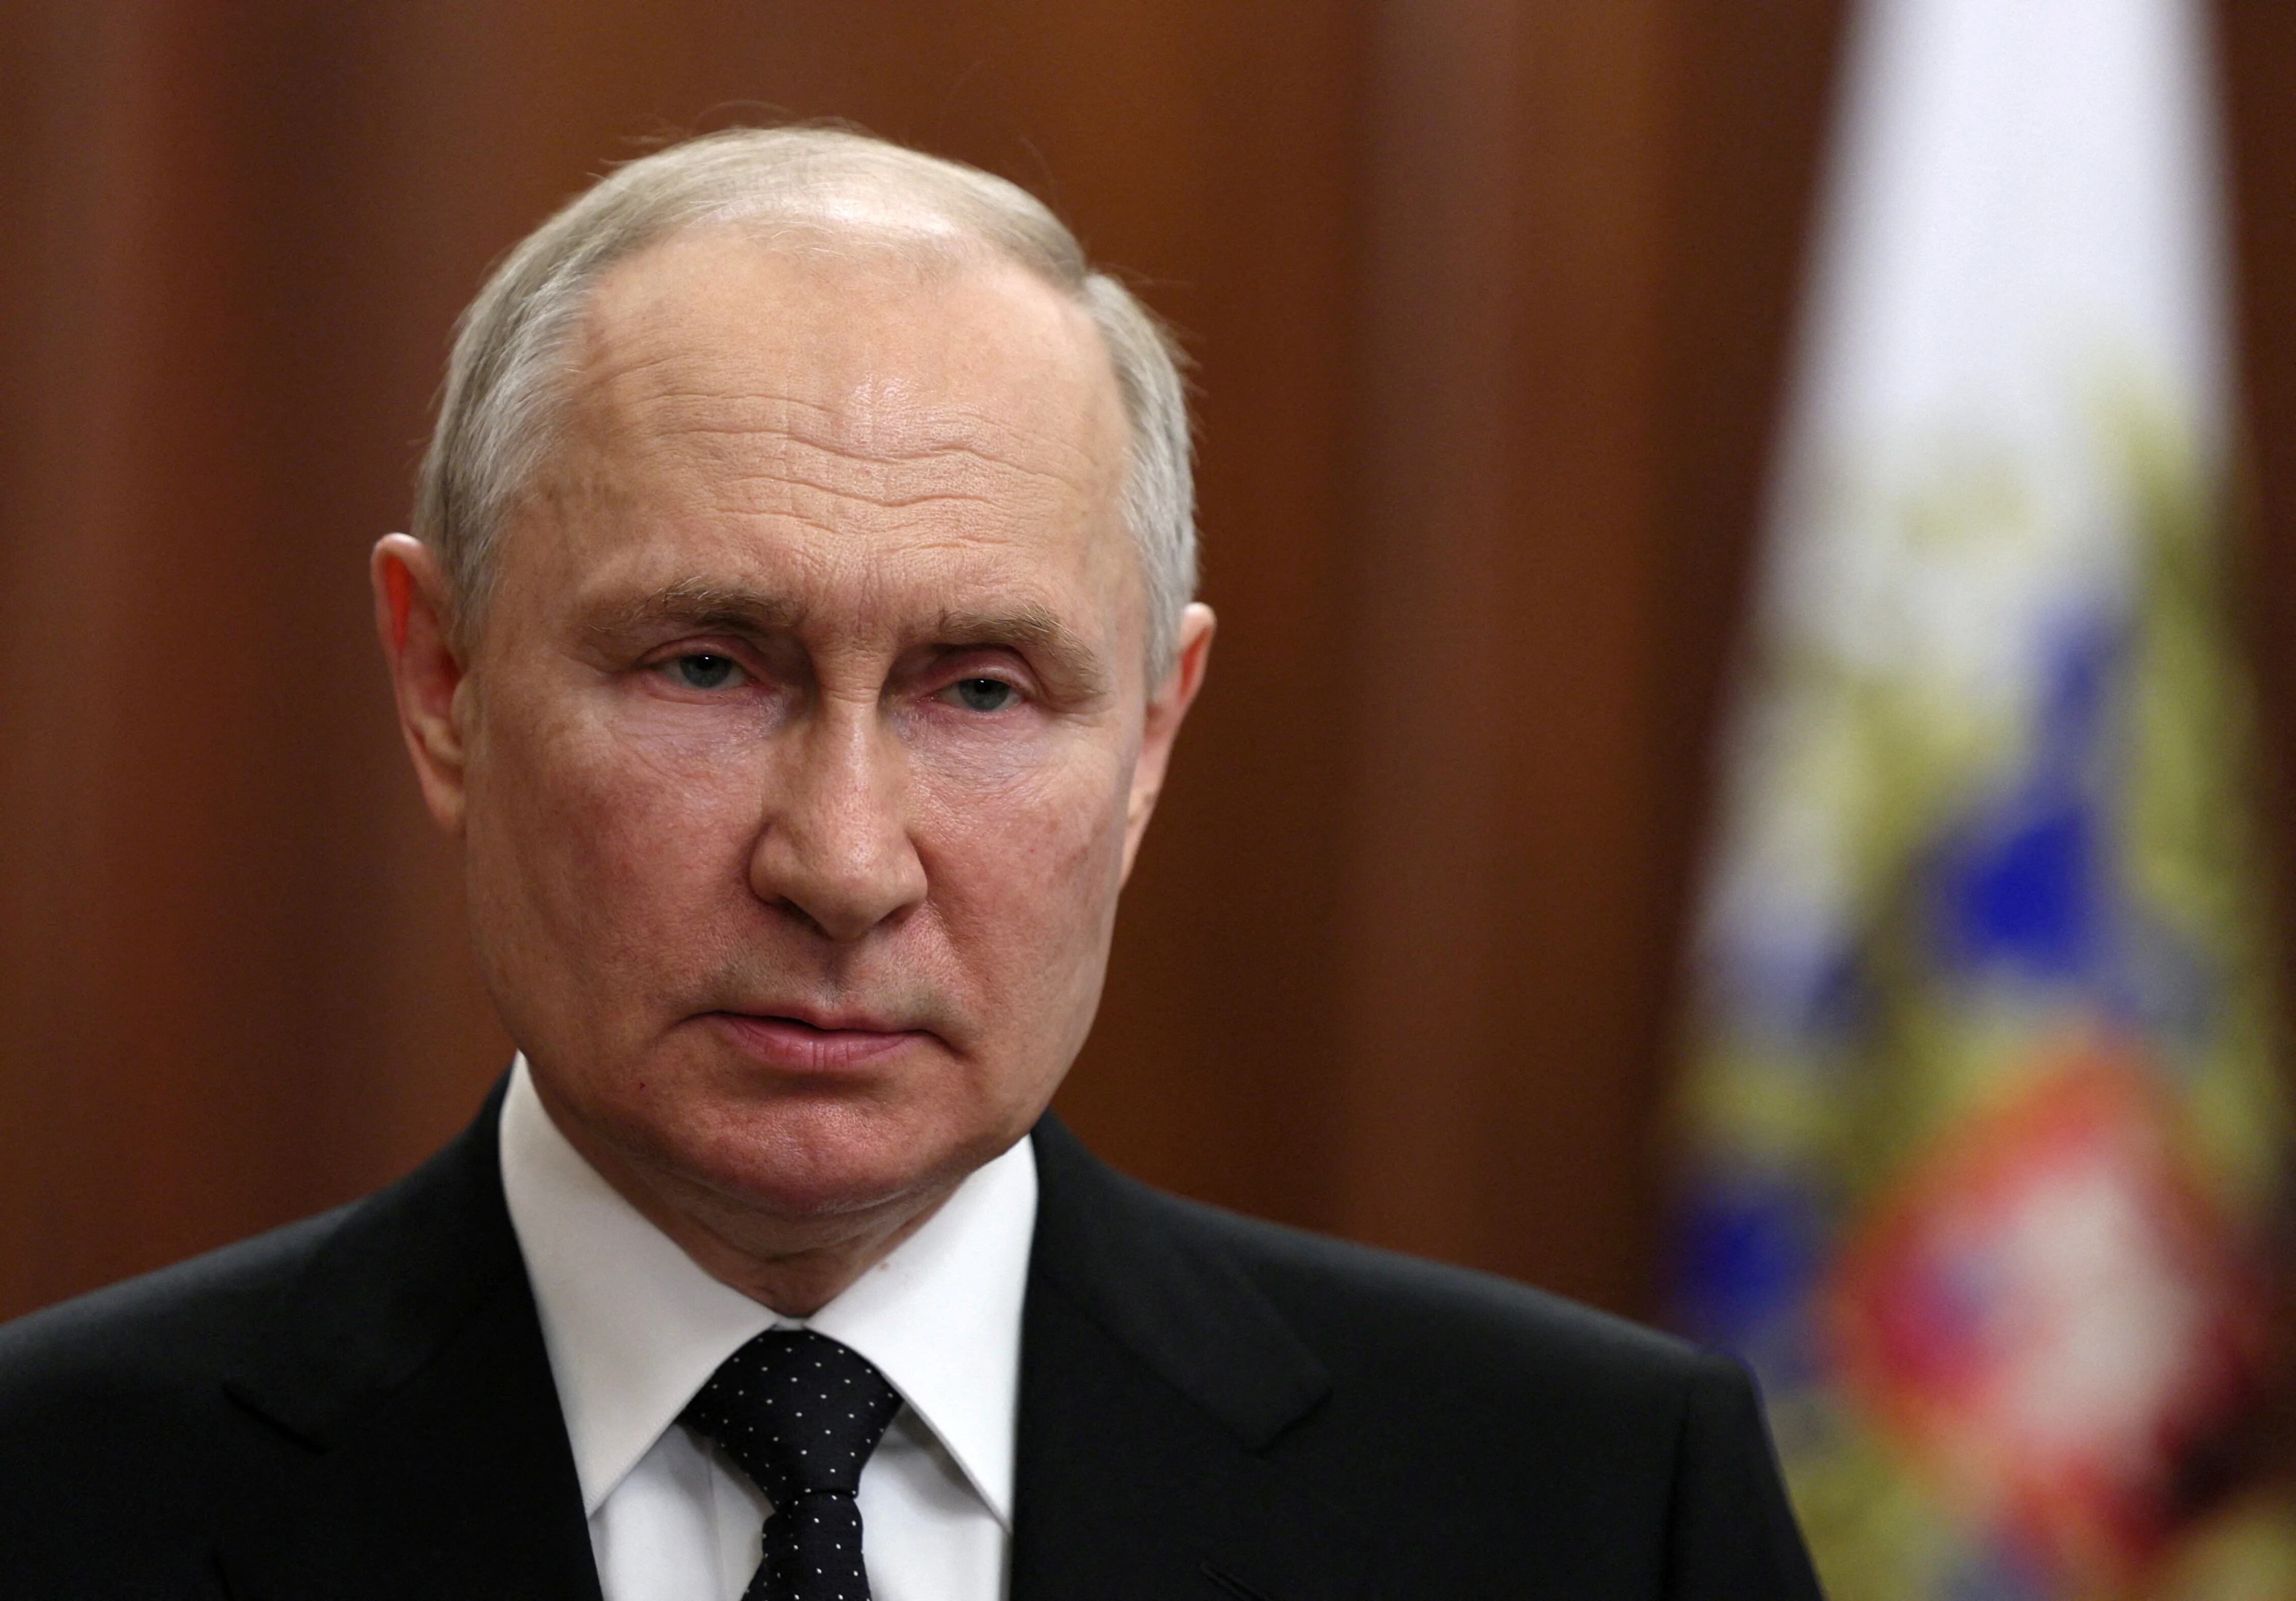 Vladimir Putin (Sputnik/Reuters)